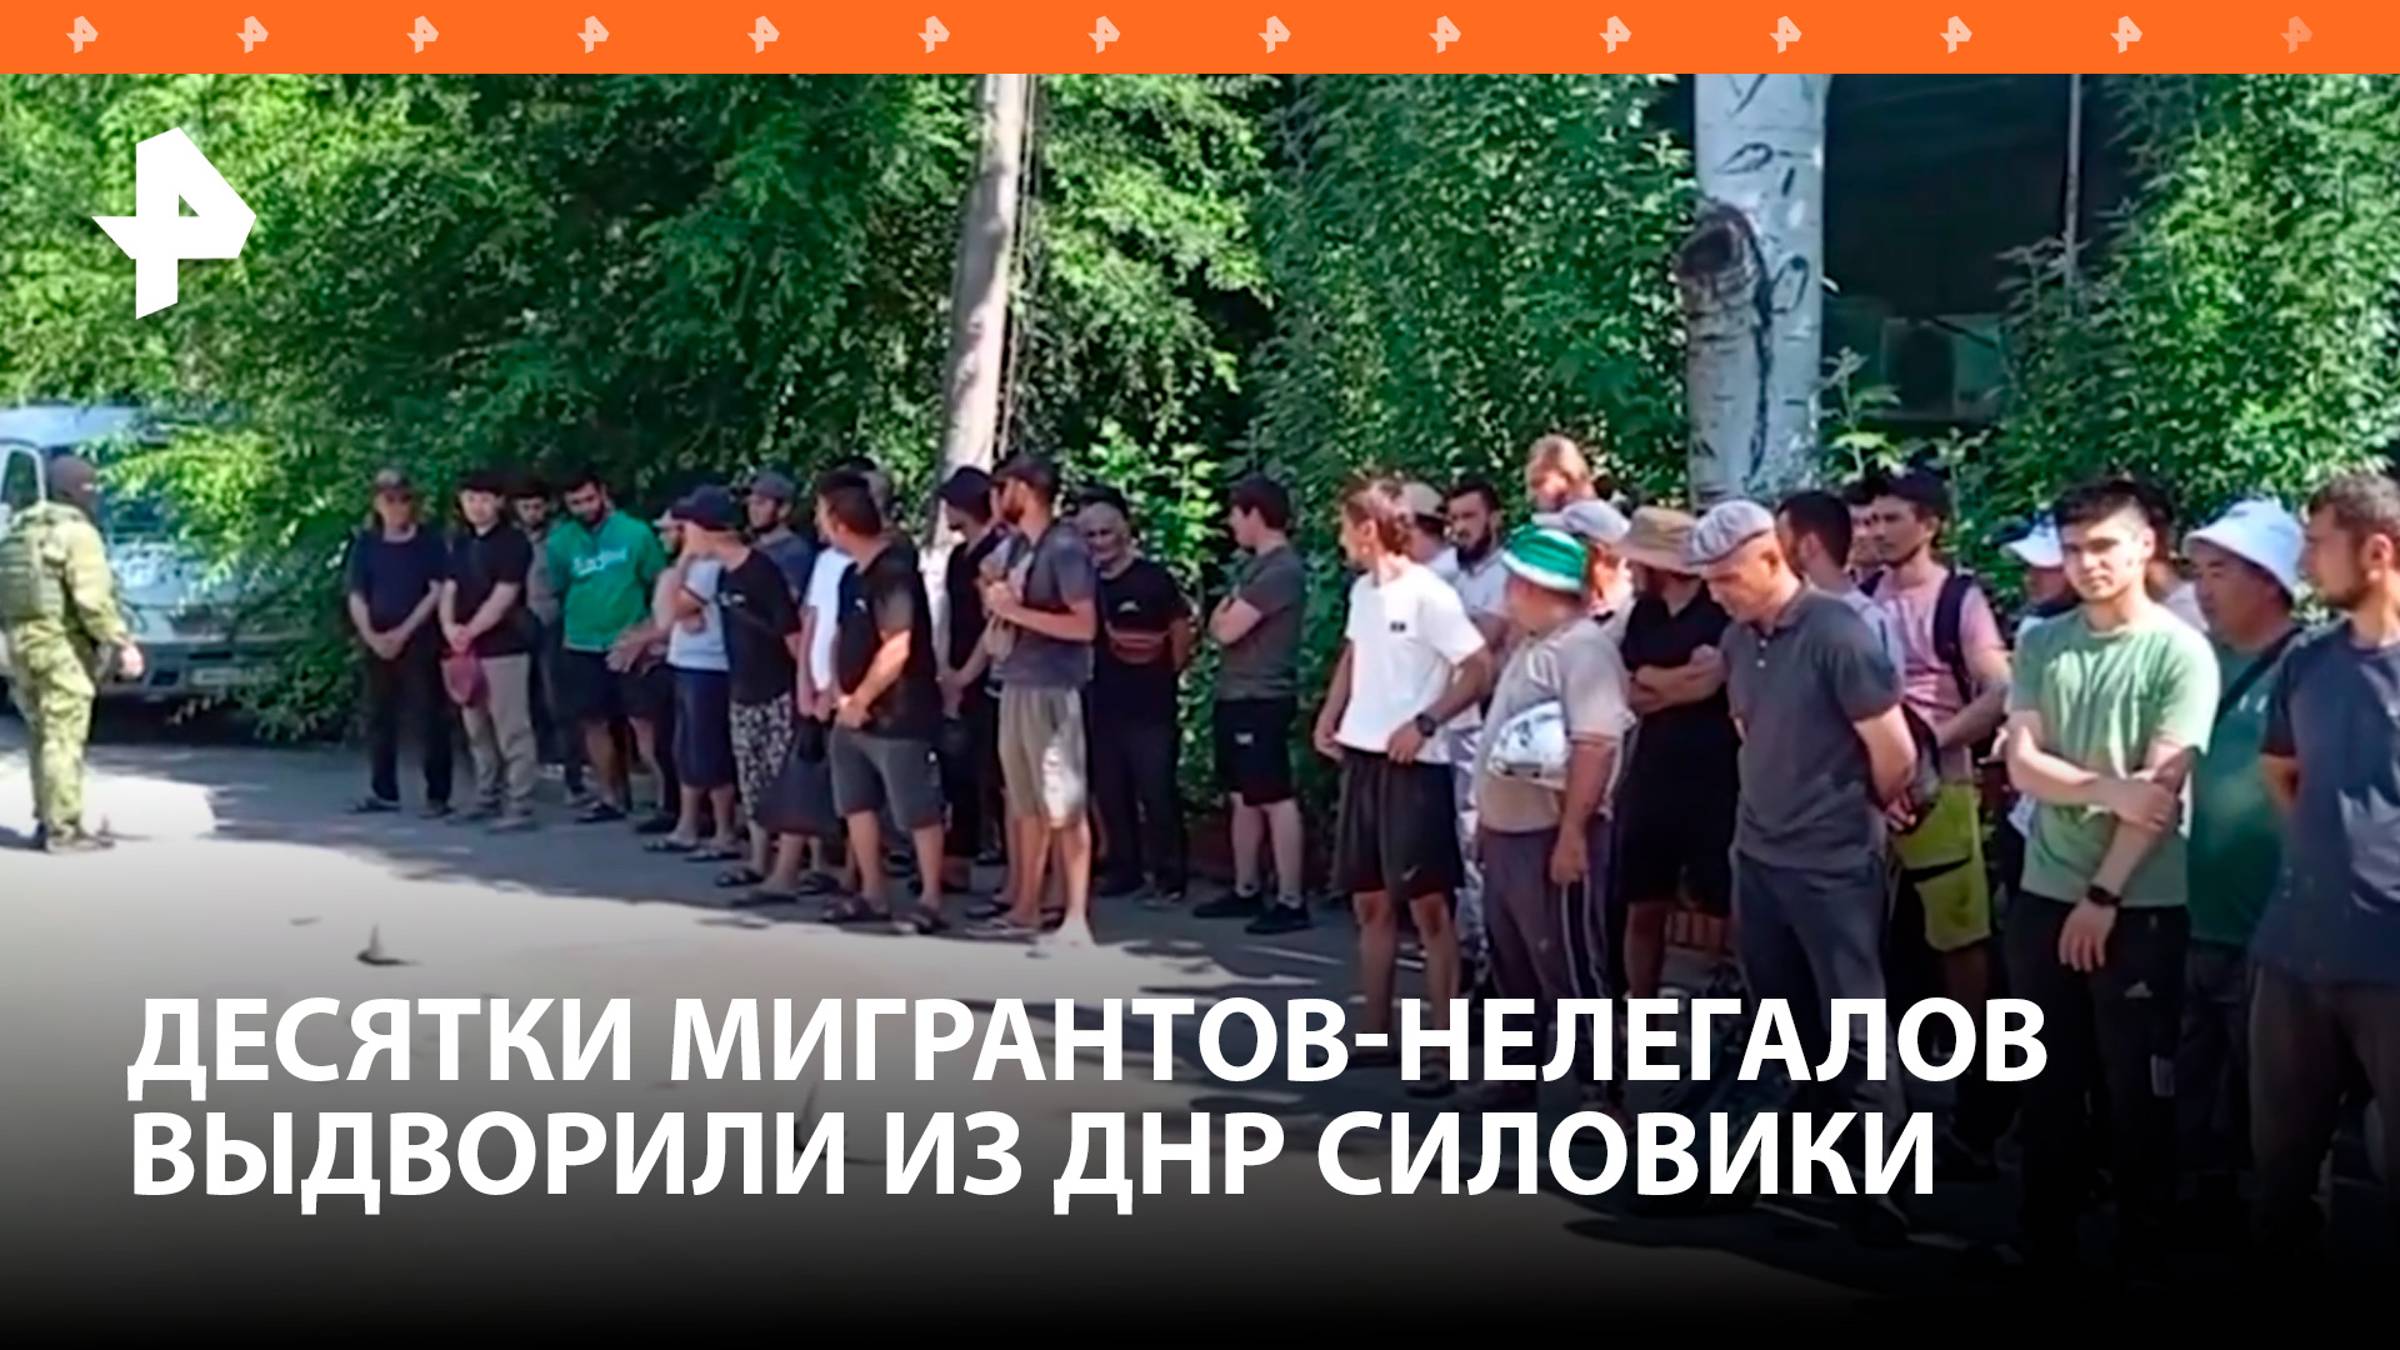 В ДНР 33 мигранта привлекли к ответственности за незаконное пребывание в России